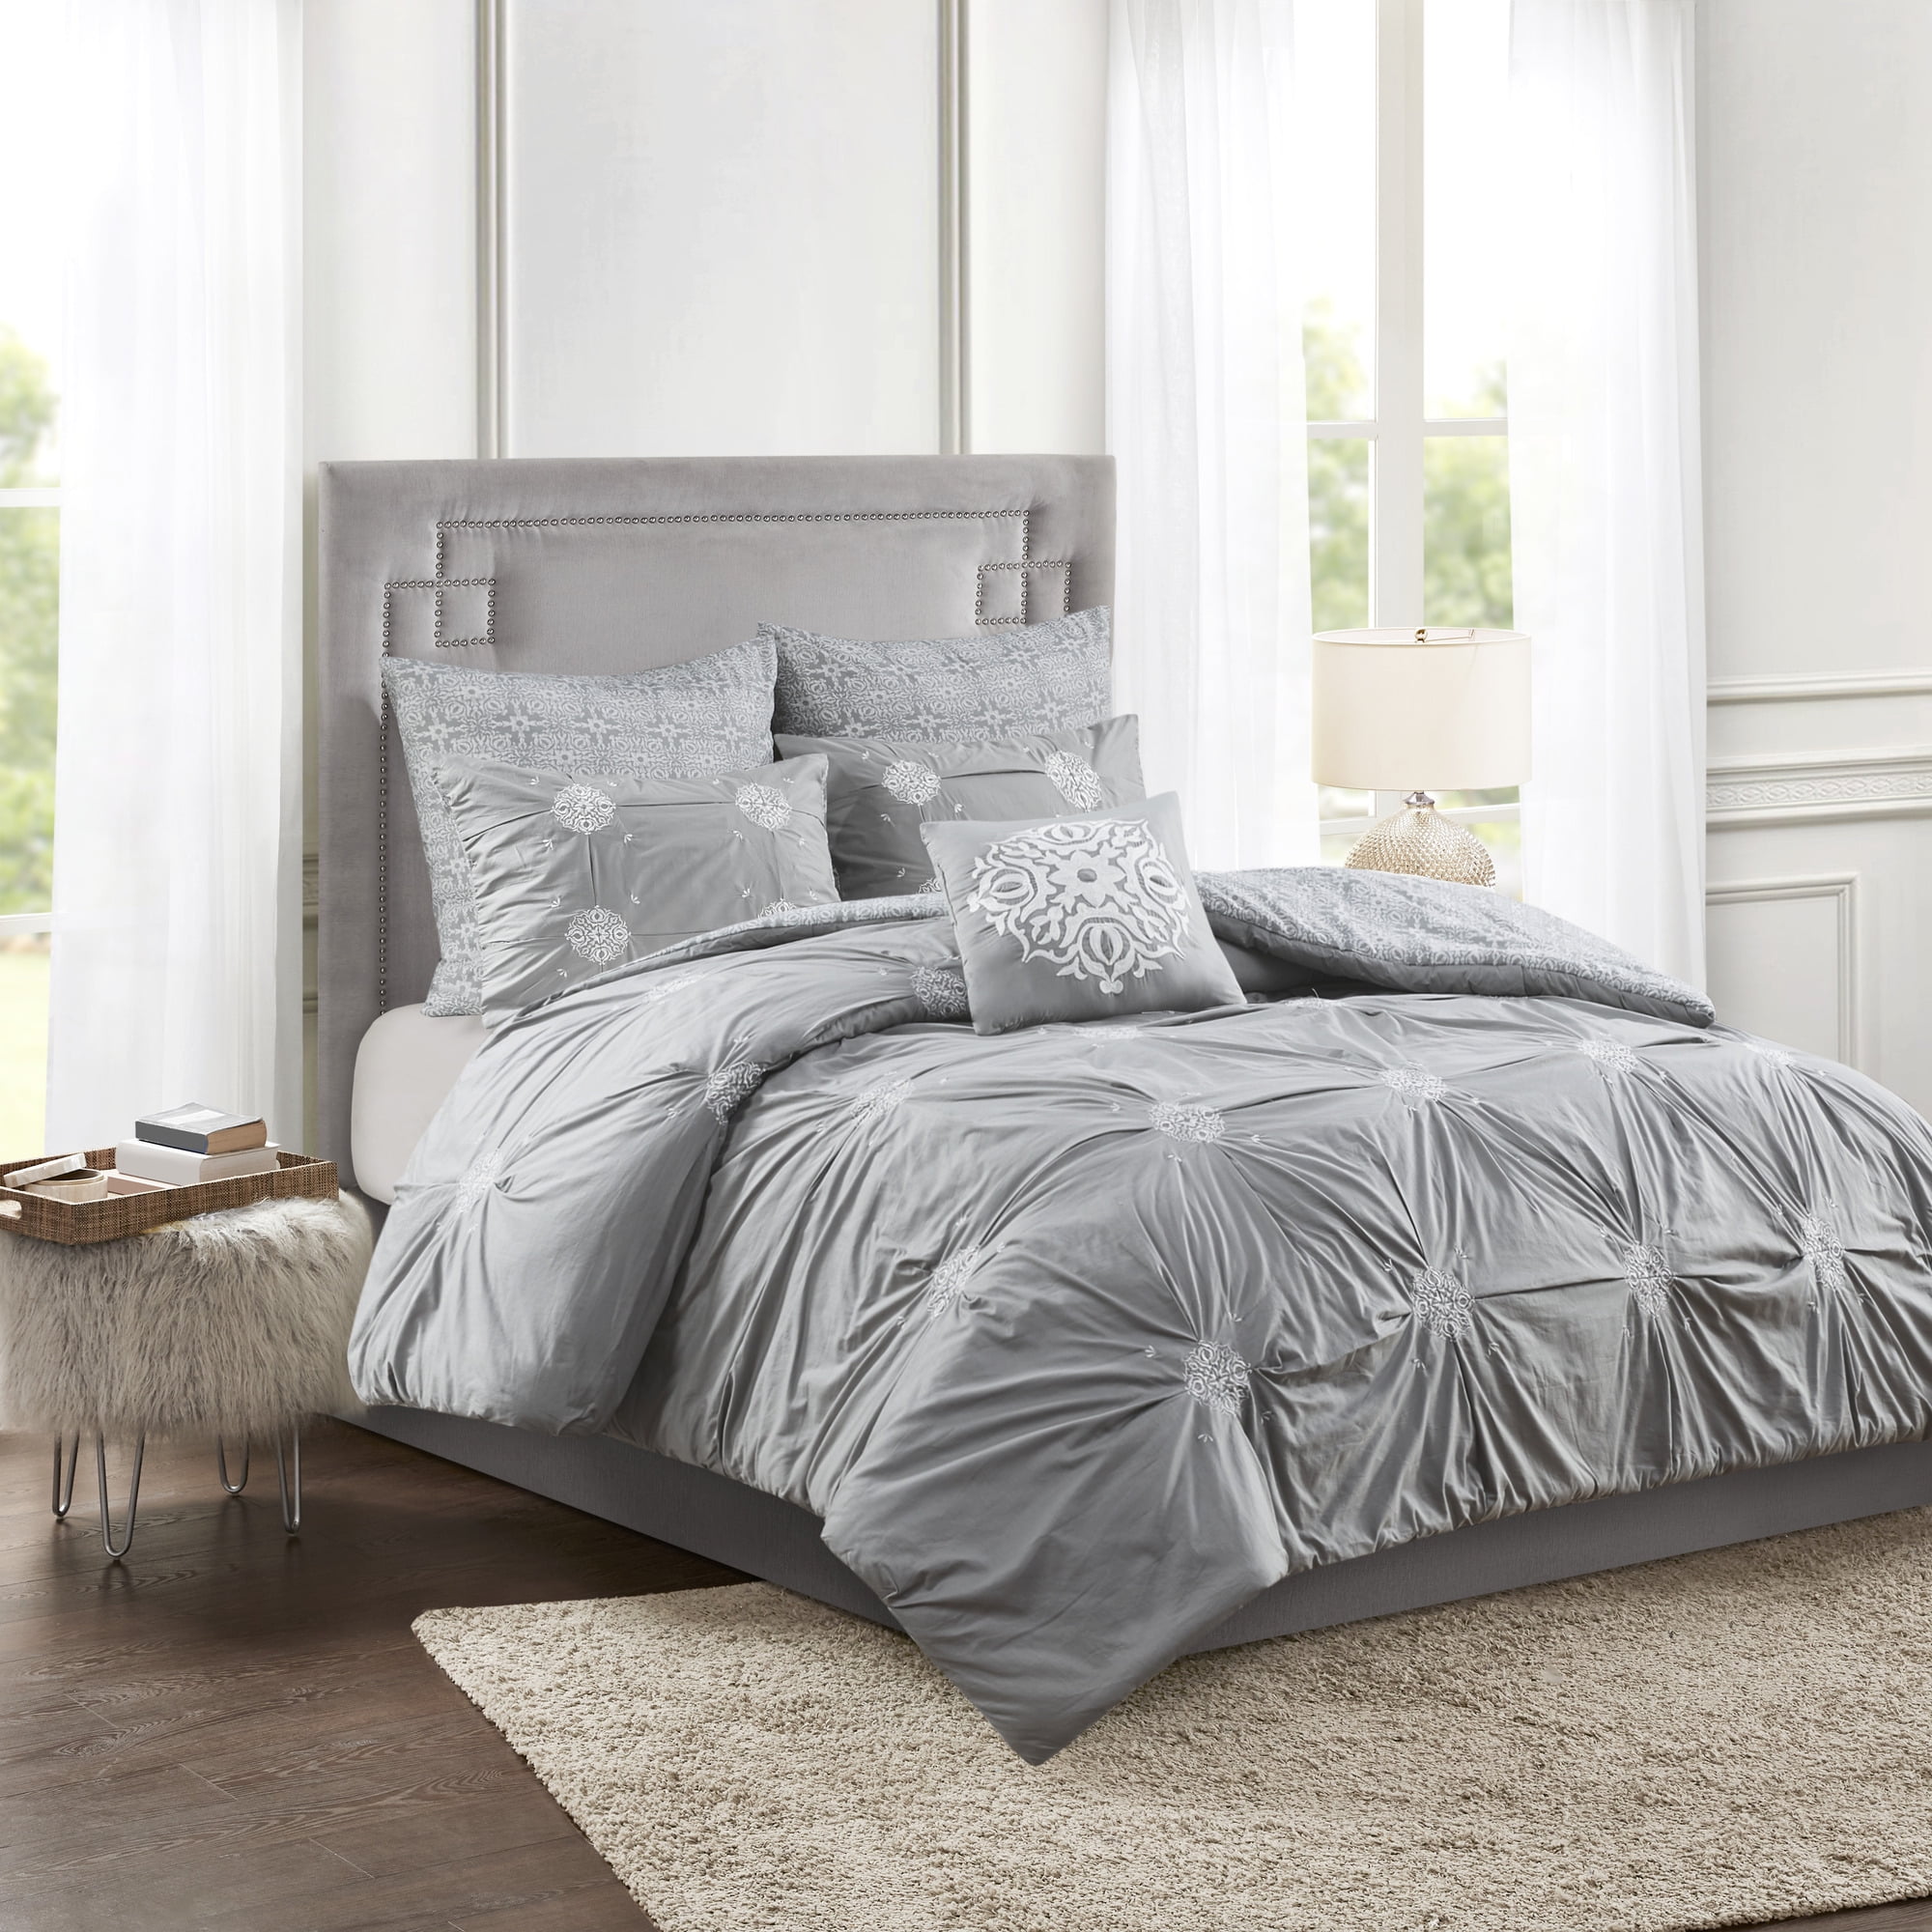 6 Piece Bedding Set for Queen Air Mattress - Gray